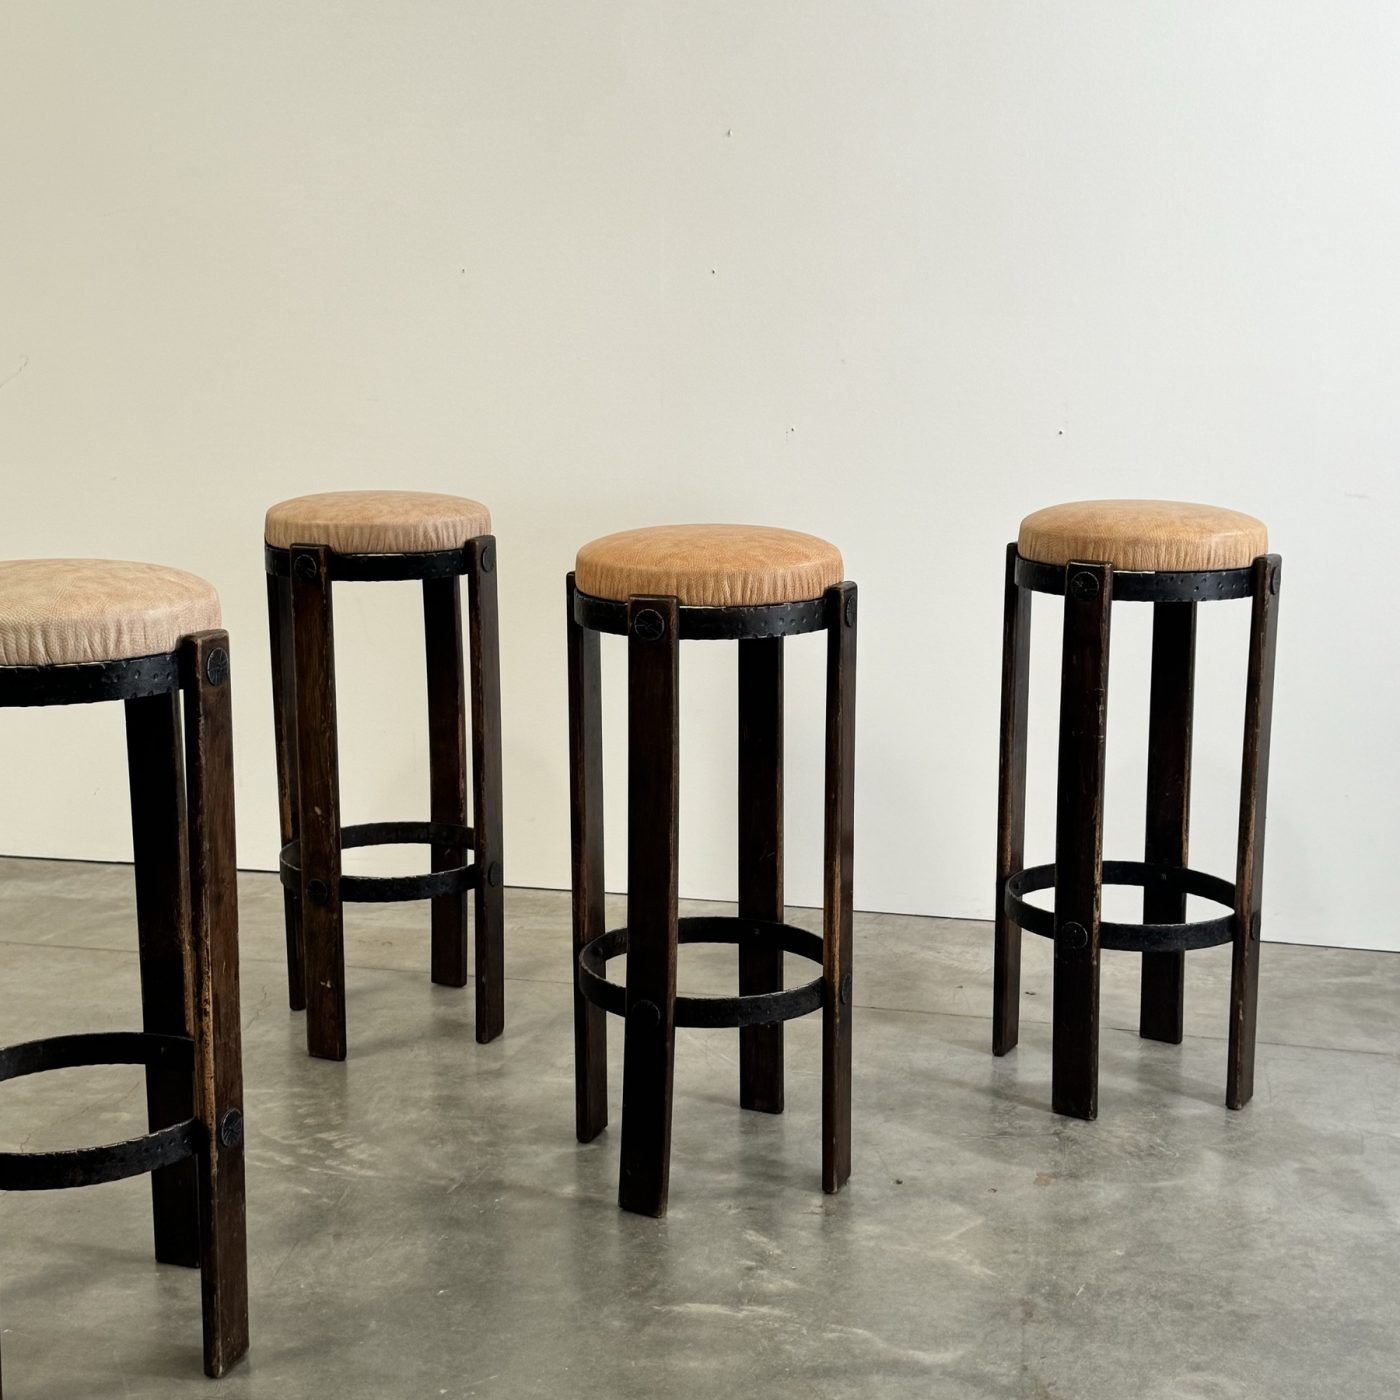 objet-vagabond-stools0002